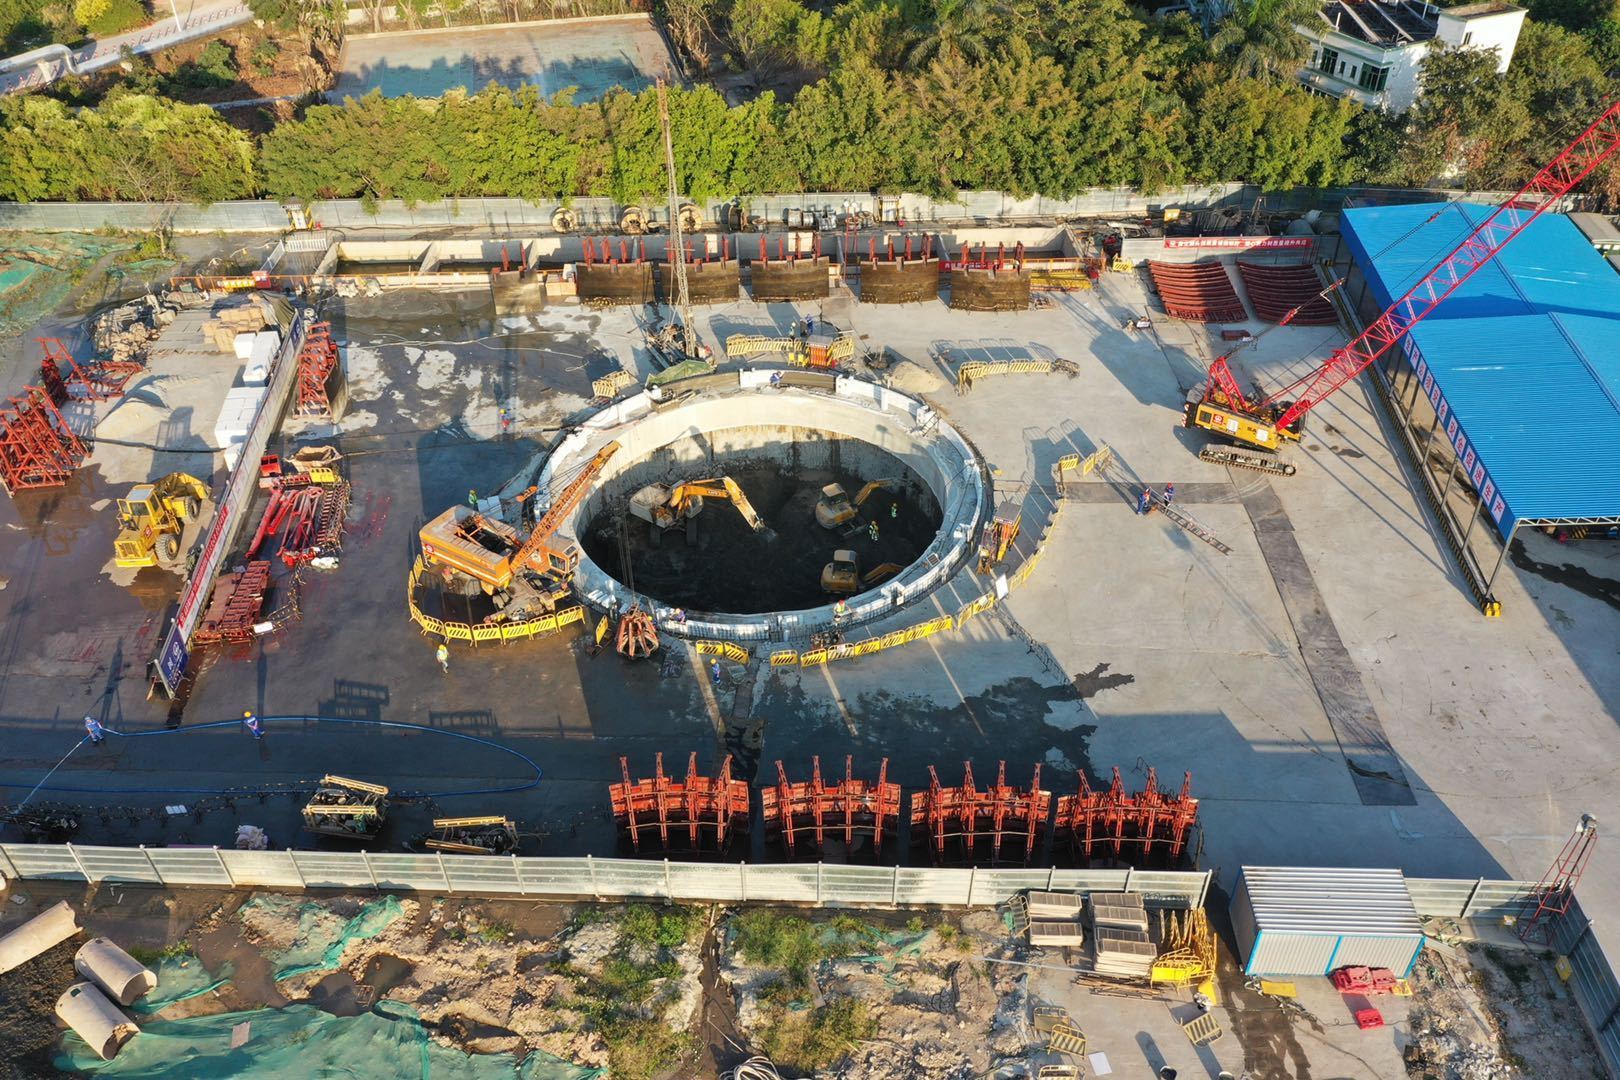 2019年11月28日珠三角水资源配置工程B3标+GS05#号工作井浇注中。